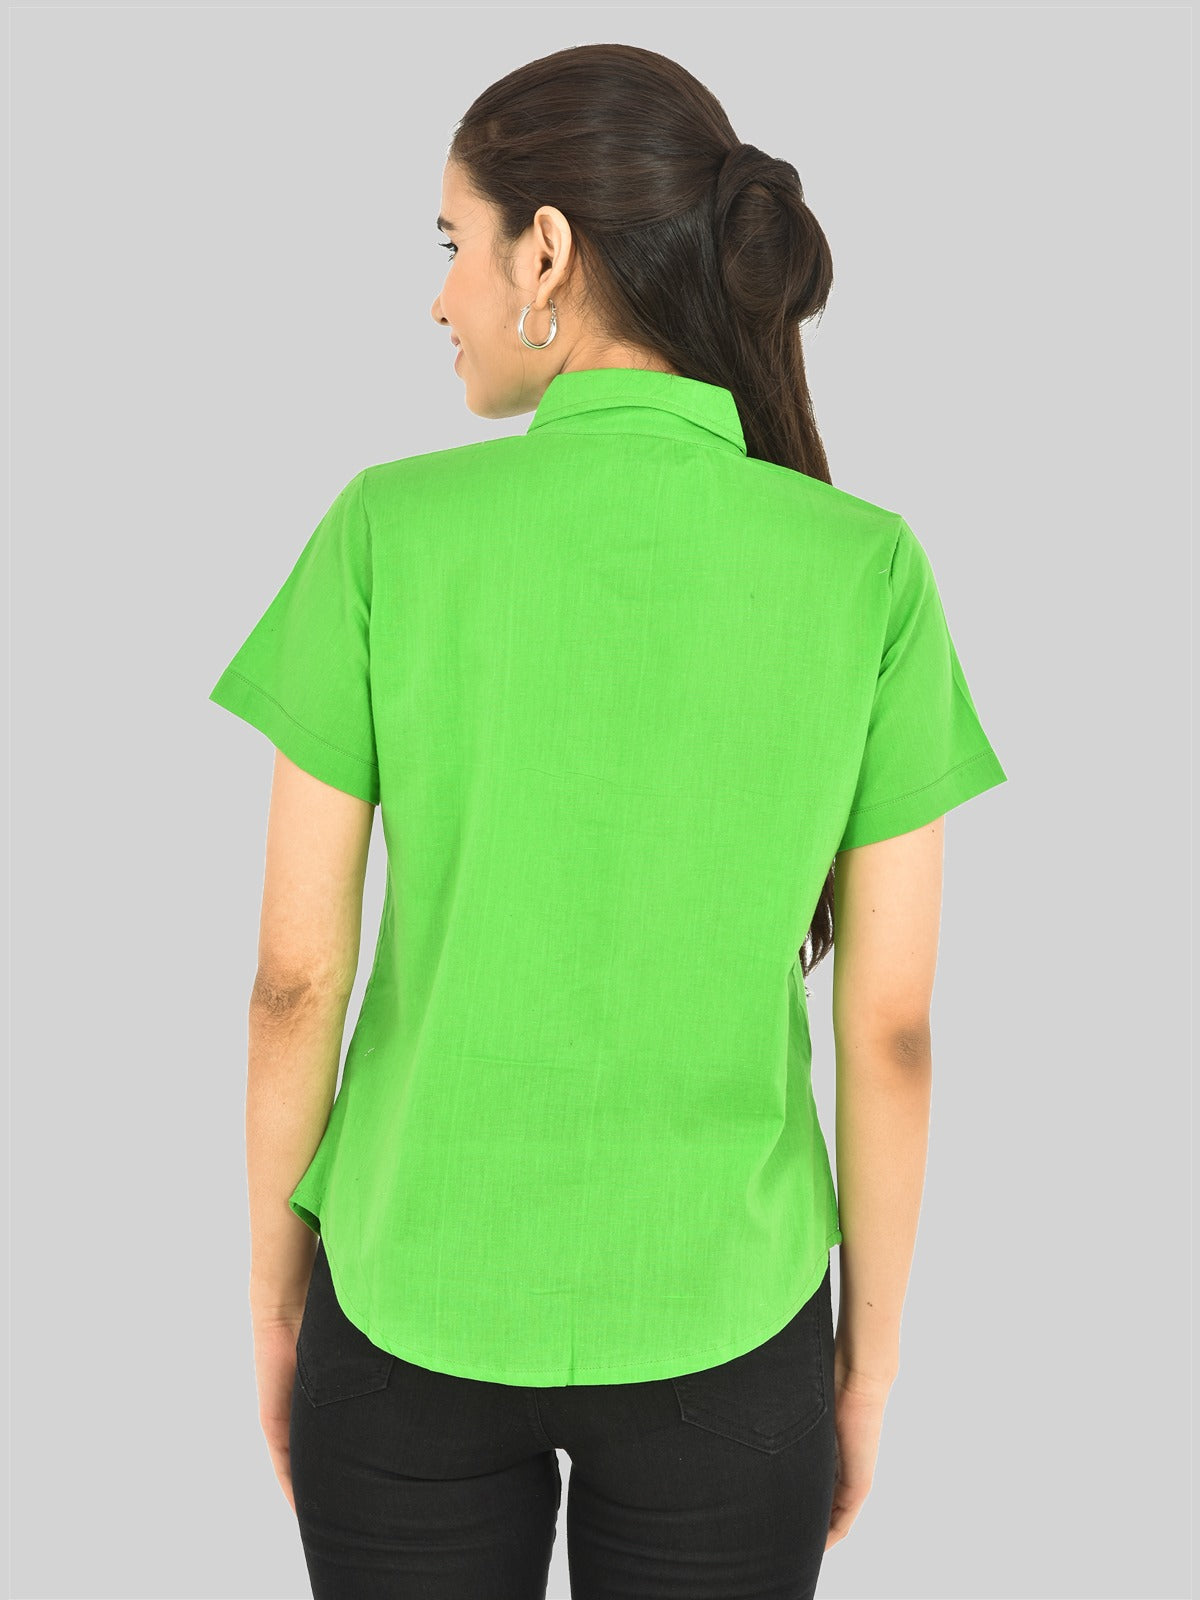 Womens Regular Fit Pista Green Half Sleeve Cotton Shirt